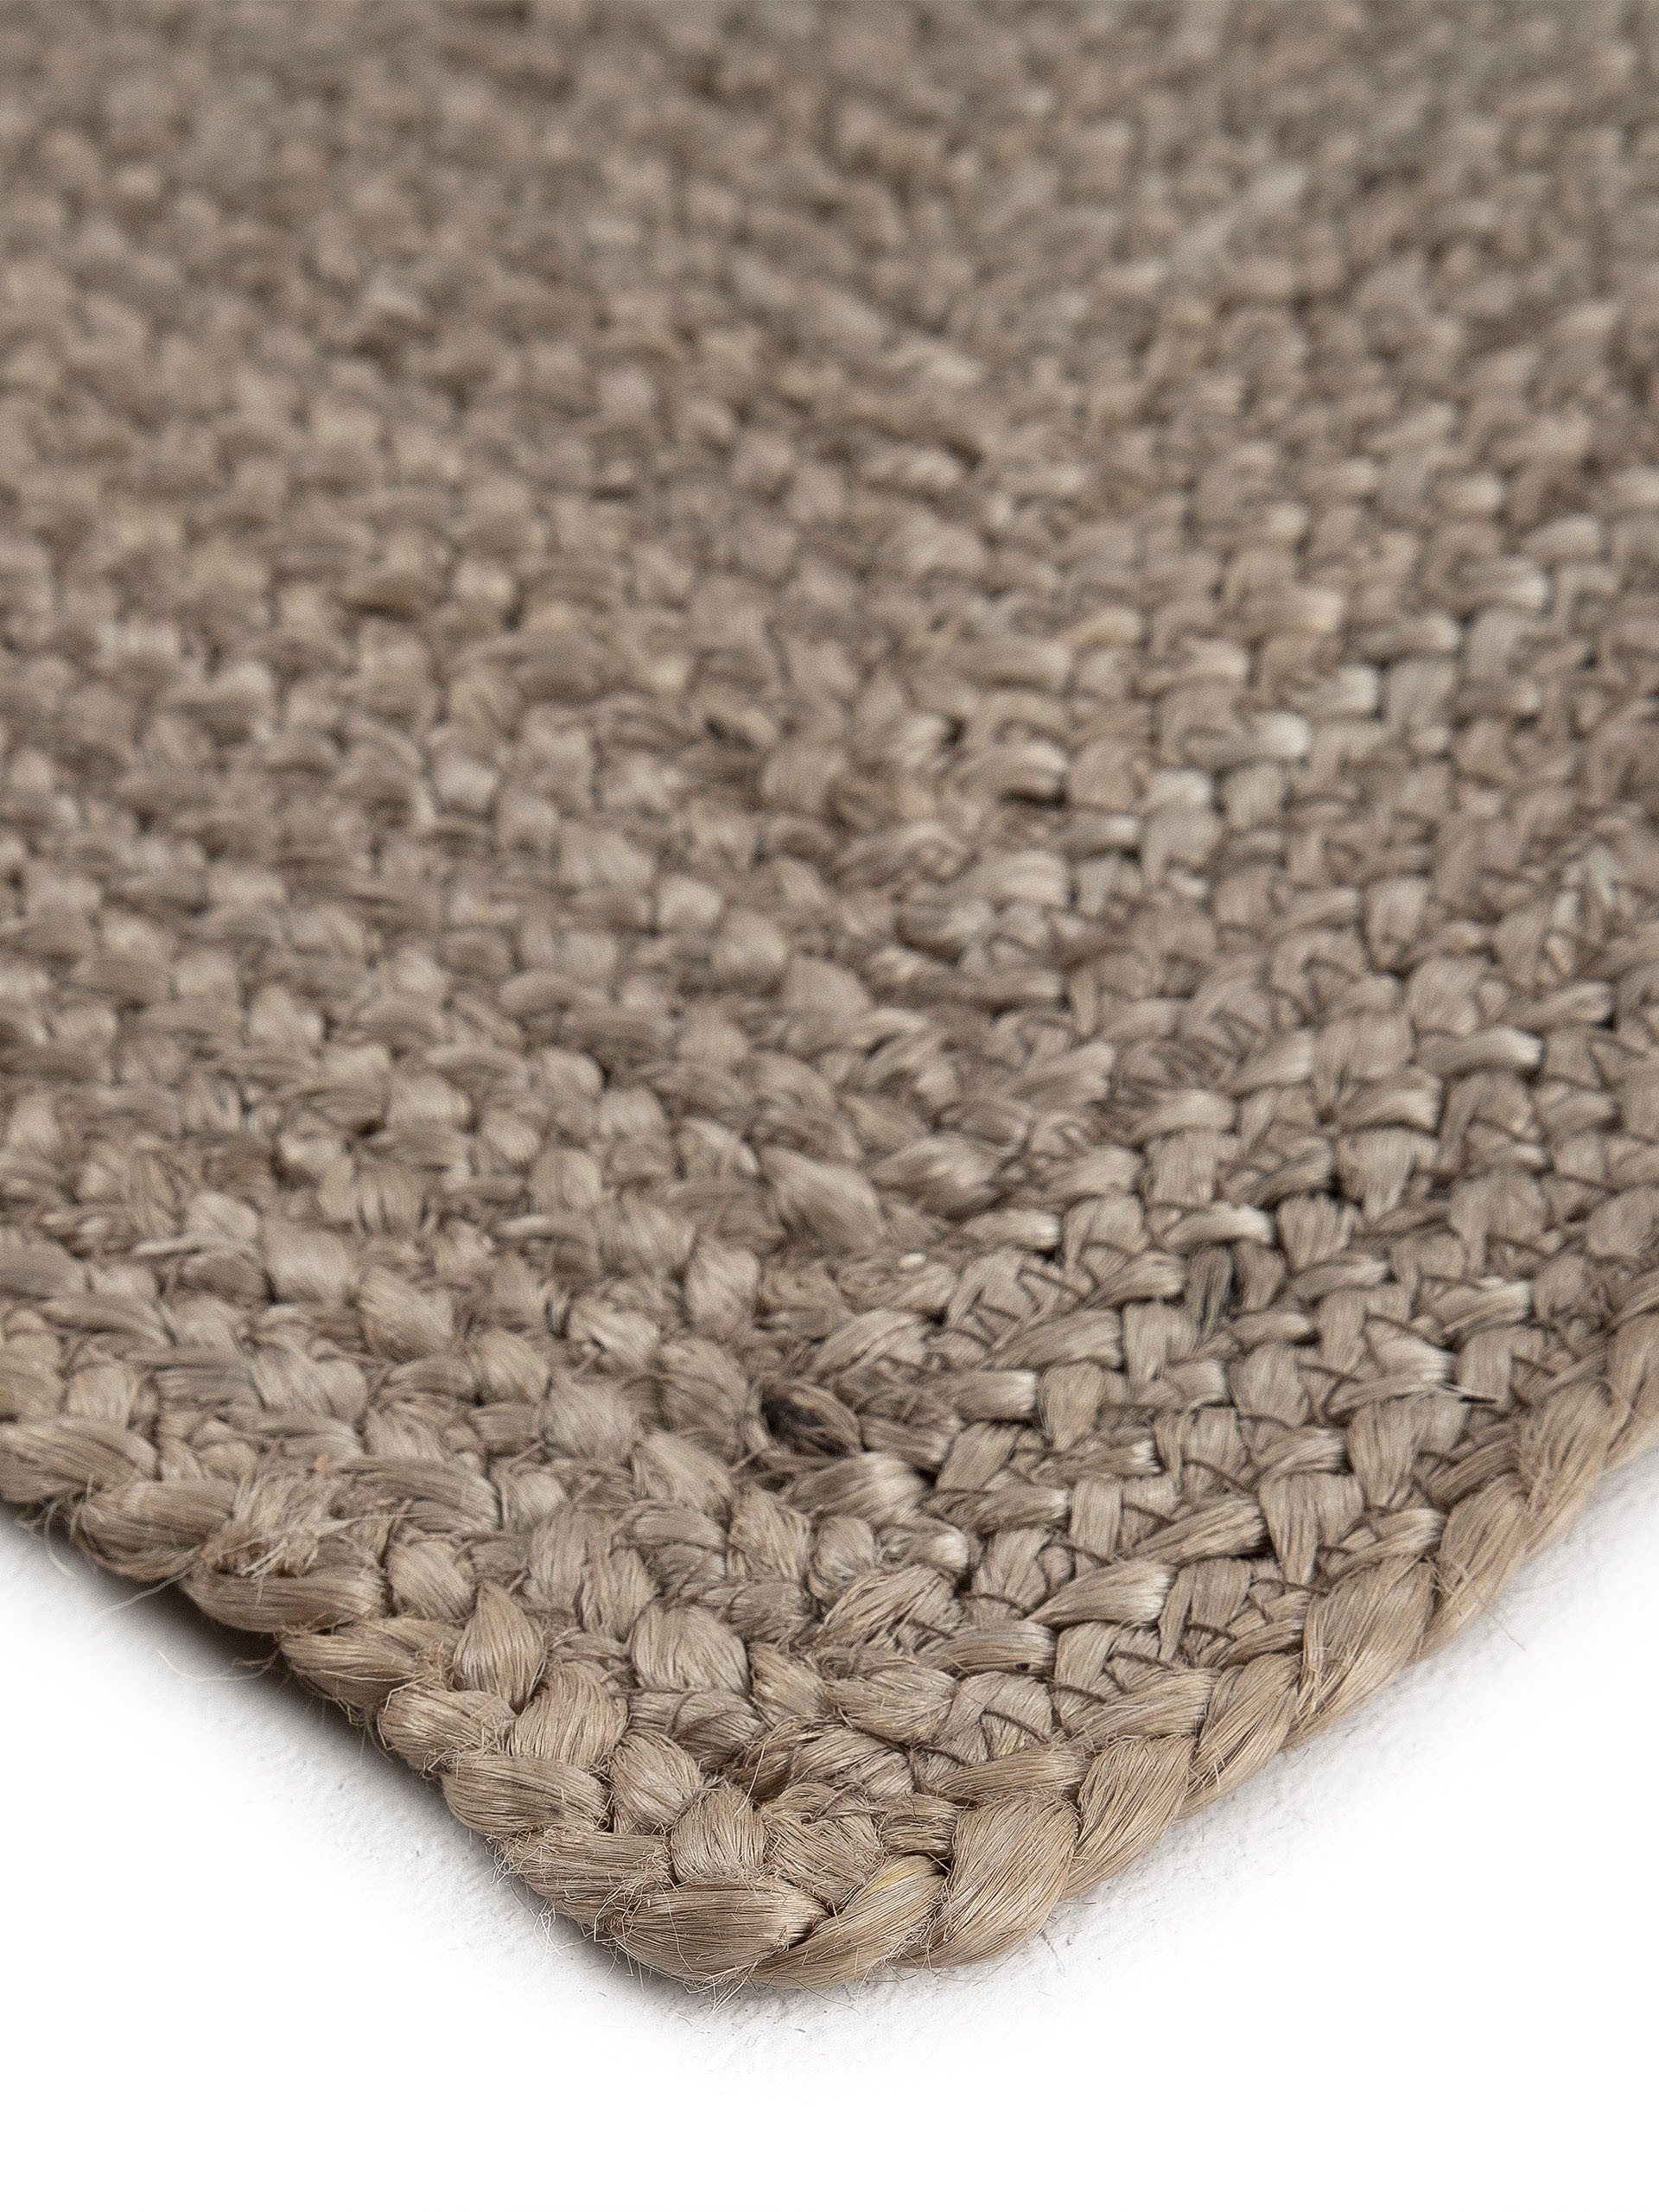 carpetfine Teppich »Nele Juteteppich Naturfaser«, rechteckig, geflochtener Wendeteppich aus 100% Jute, quadratisch und als Läufer